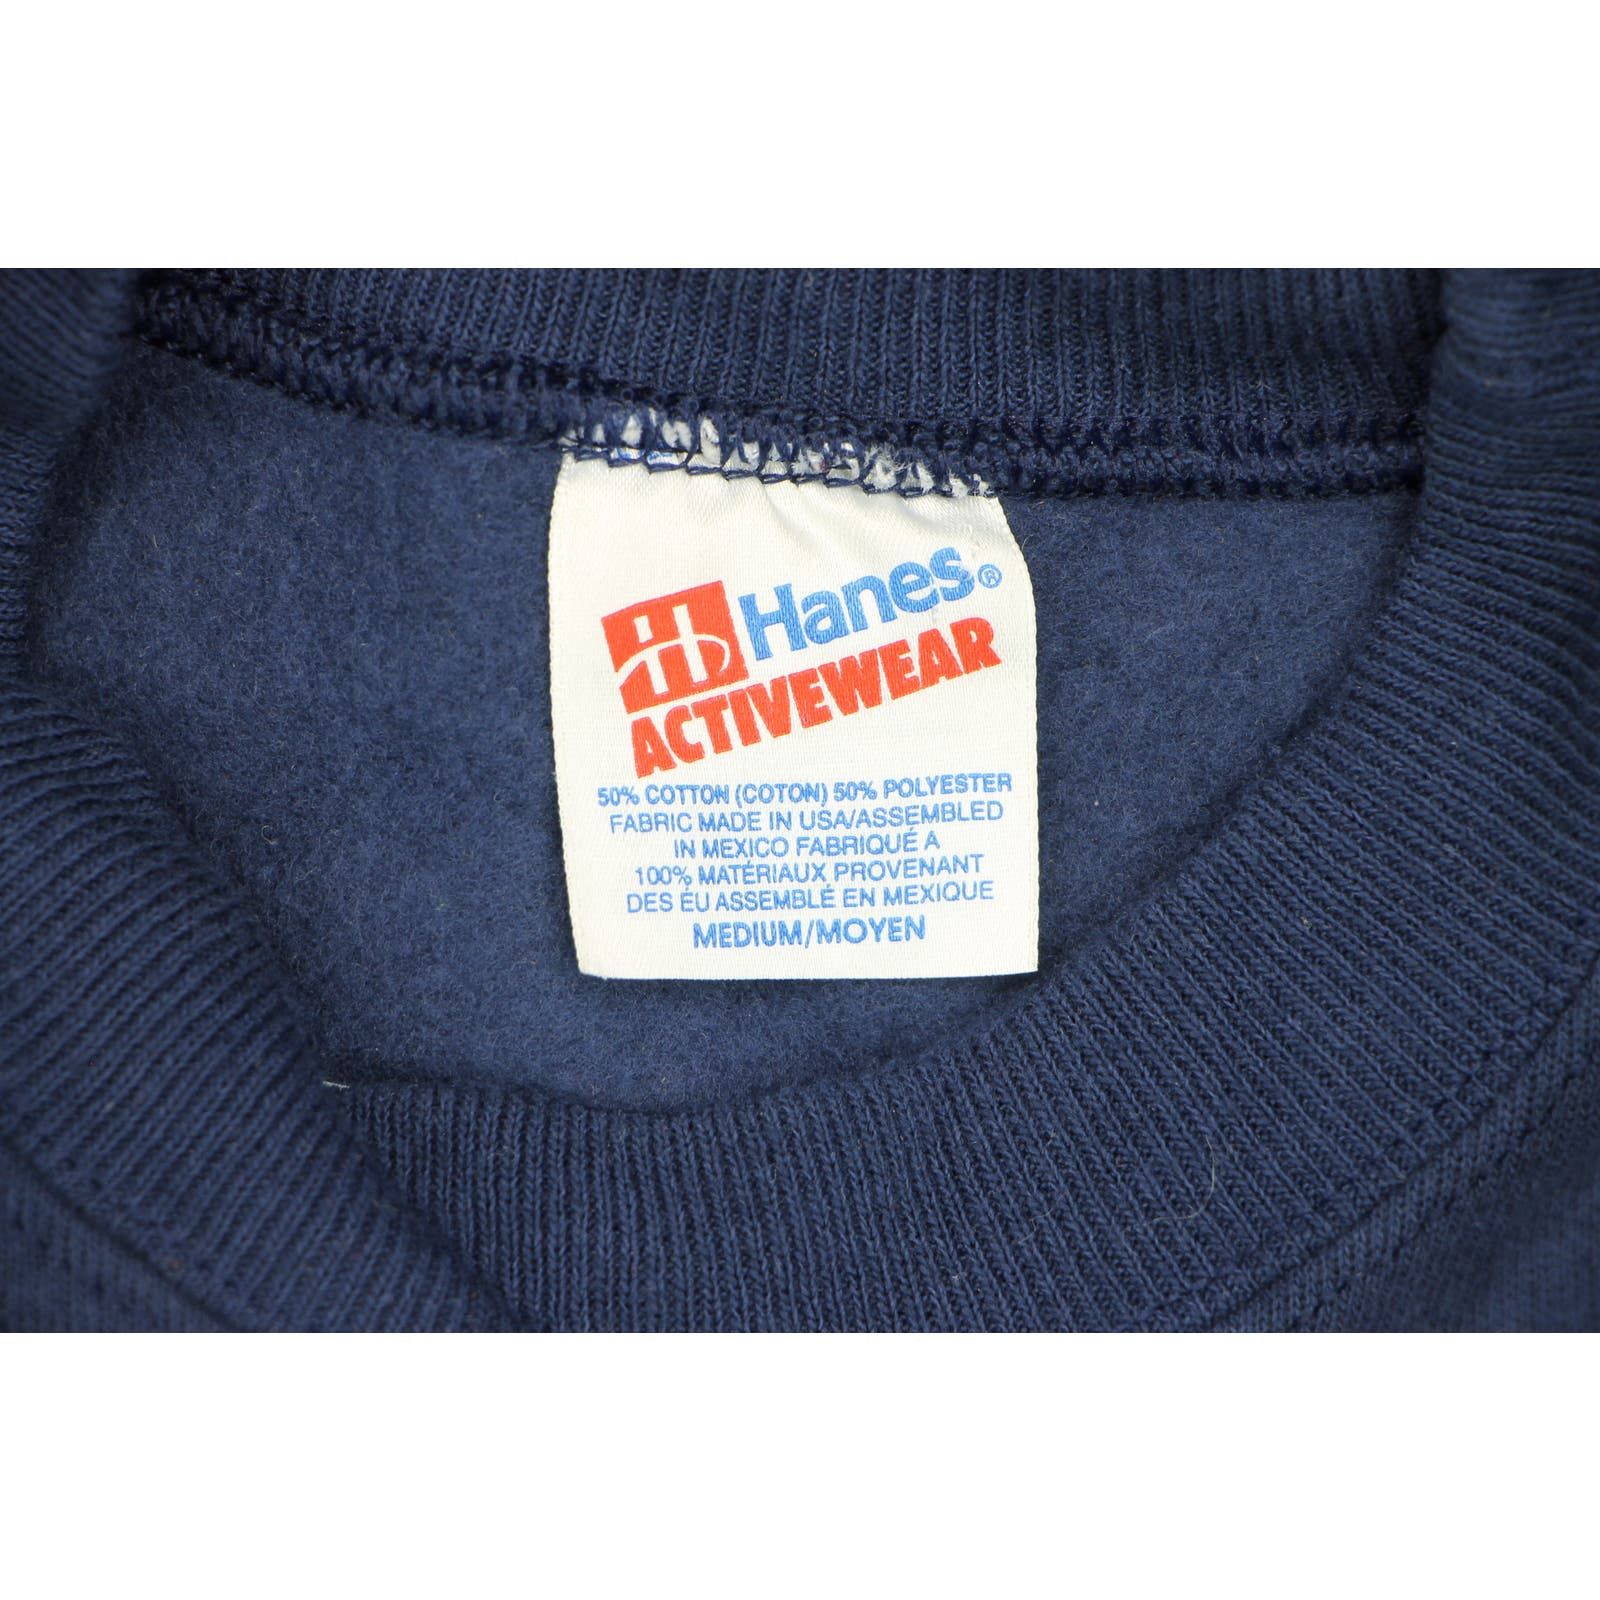 Hanes 90s Vintage Dallas Cowboys Football Crewneck Sweatshirt Size US S / EU 44-46 / 1 - 4 Preview